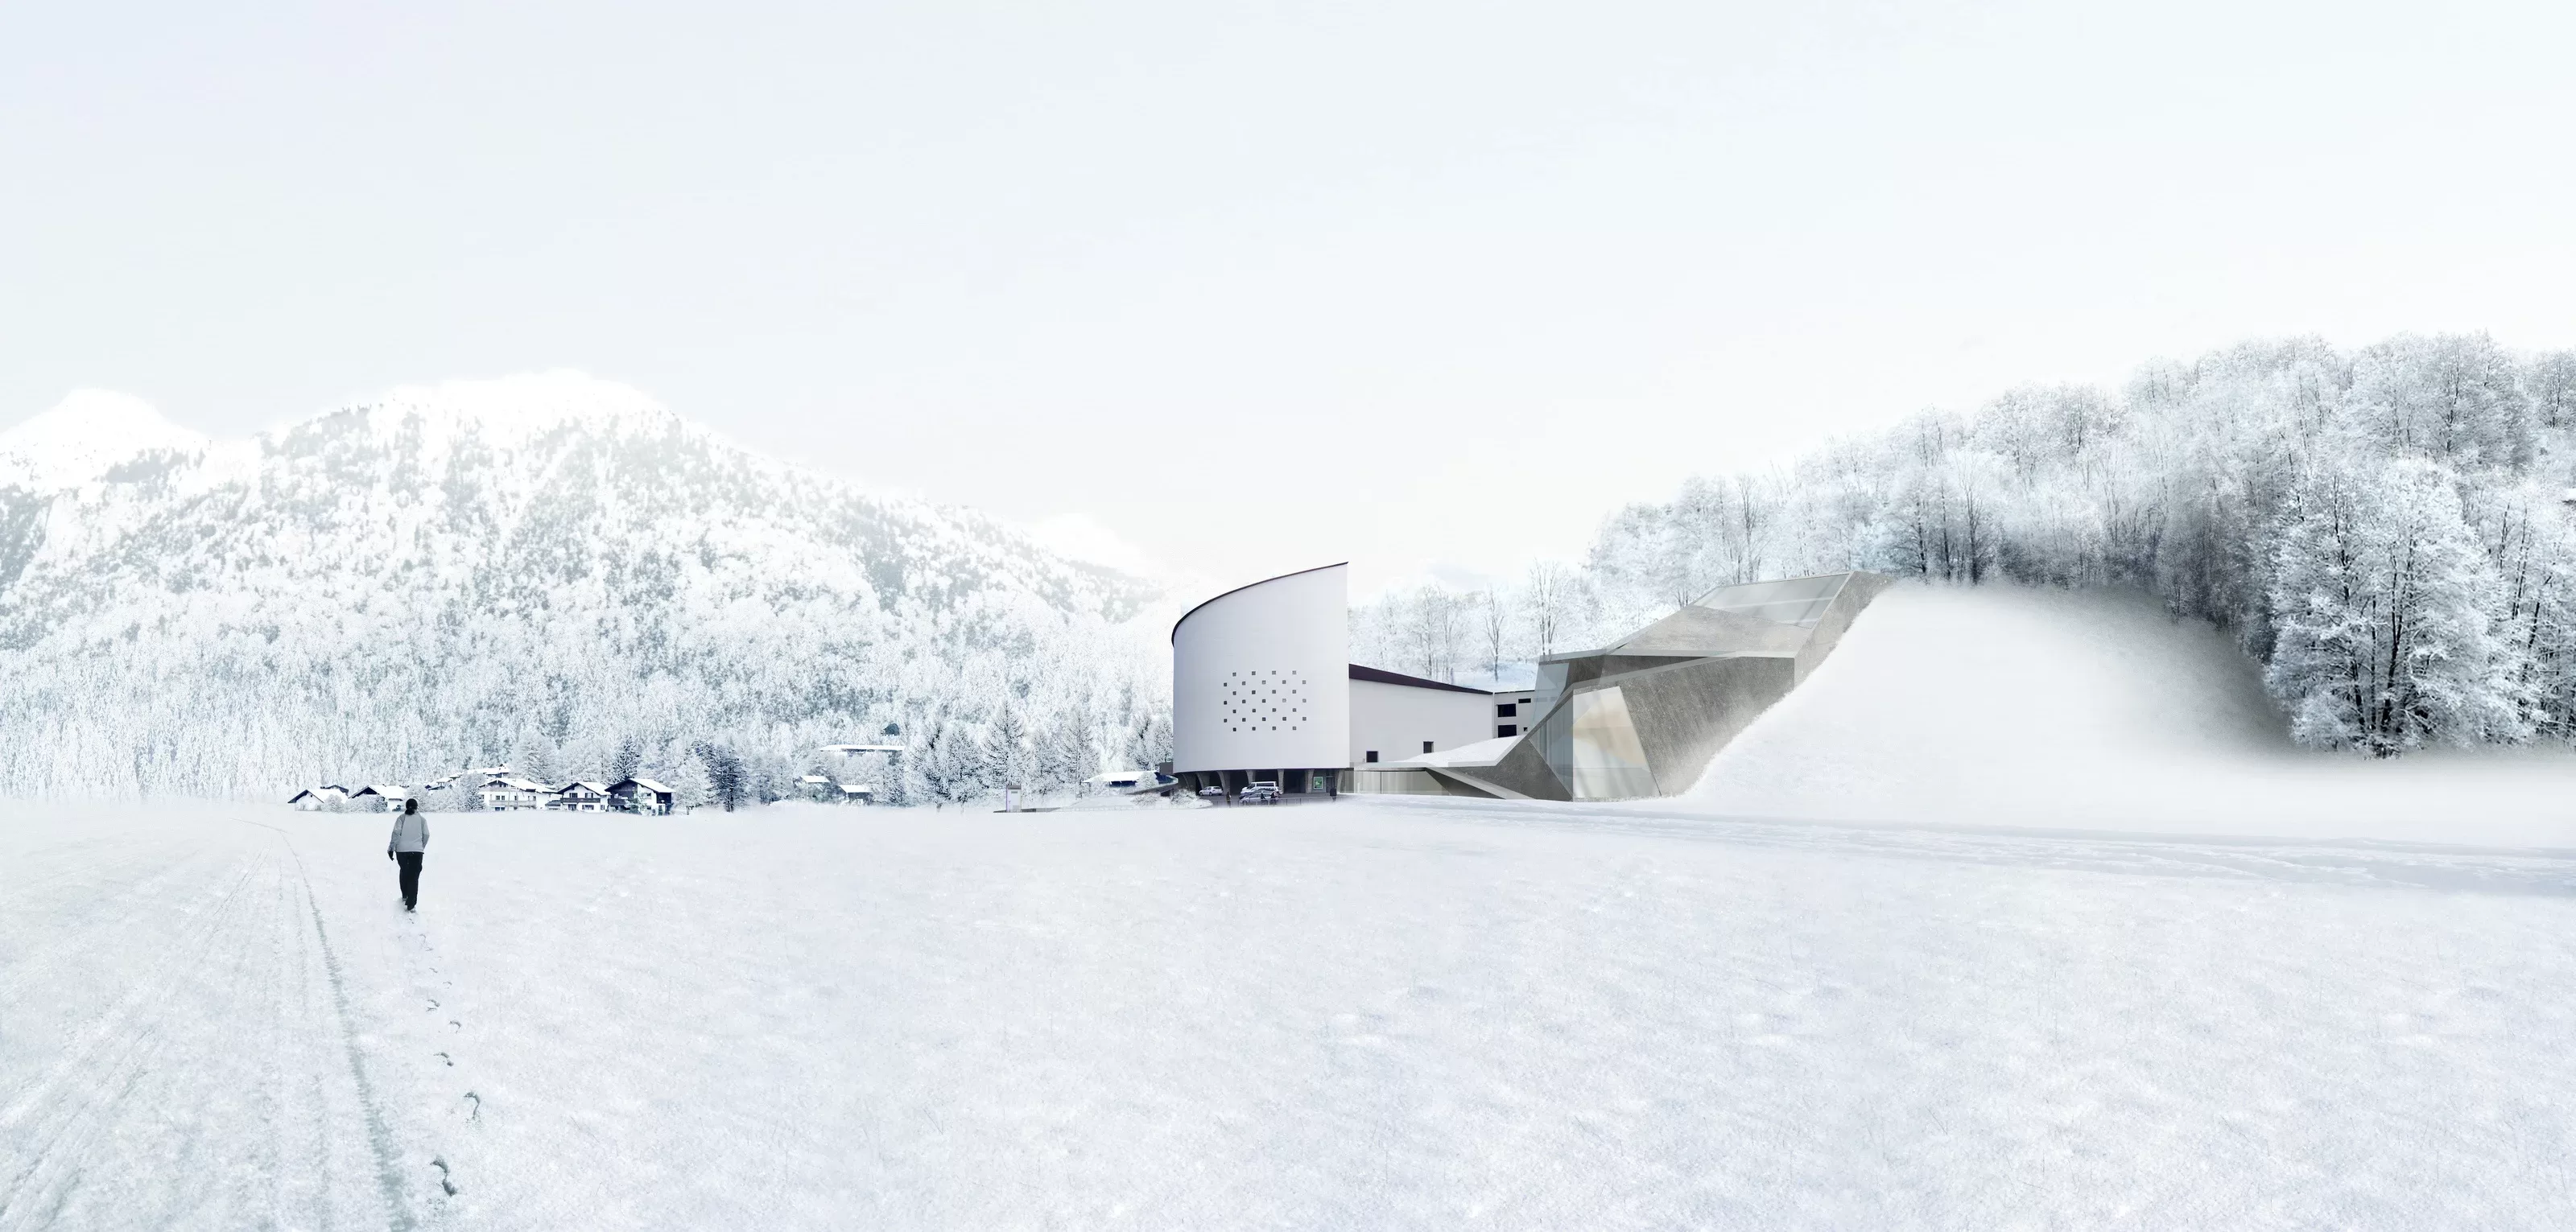 Winterfestspielhaus Erl  |  Hadi Teherani Architects